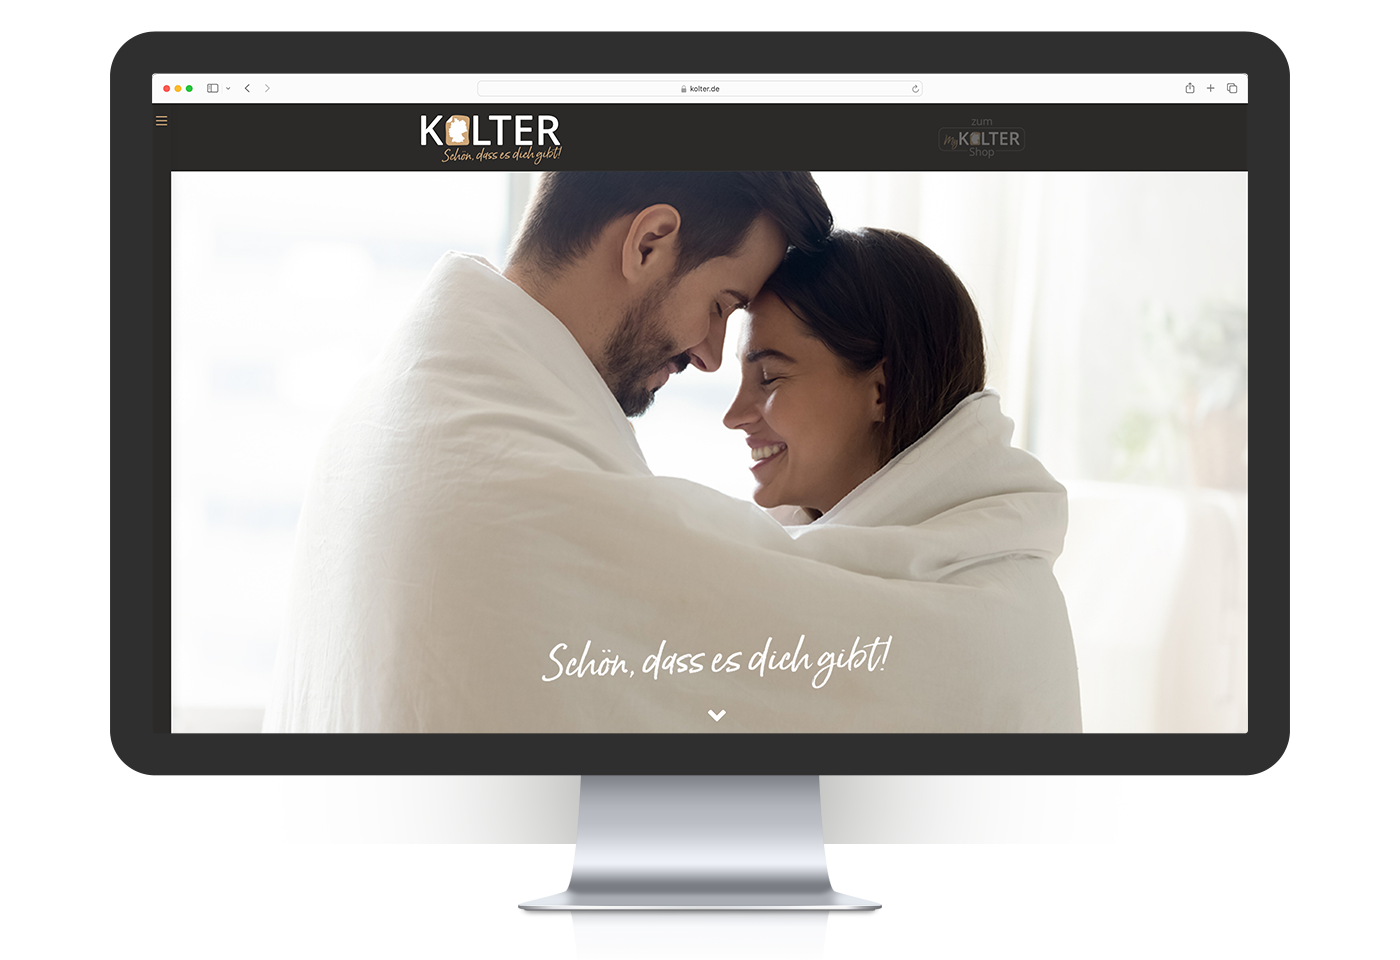 Wordpress-Website und Blog für das Unternehmen "Kolter GmbH" inklusive responsivem Webdesign